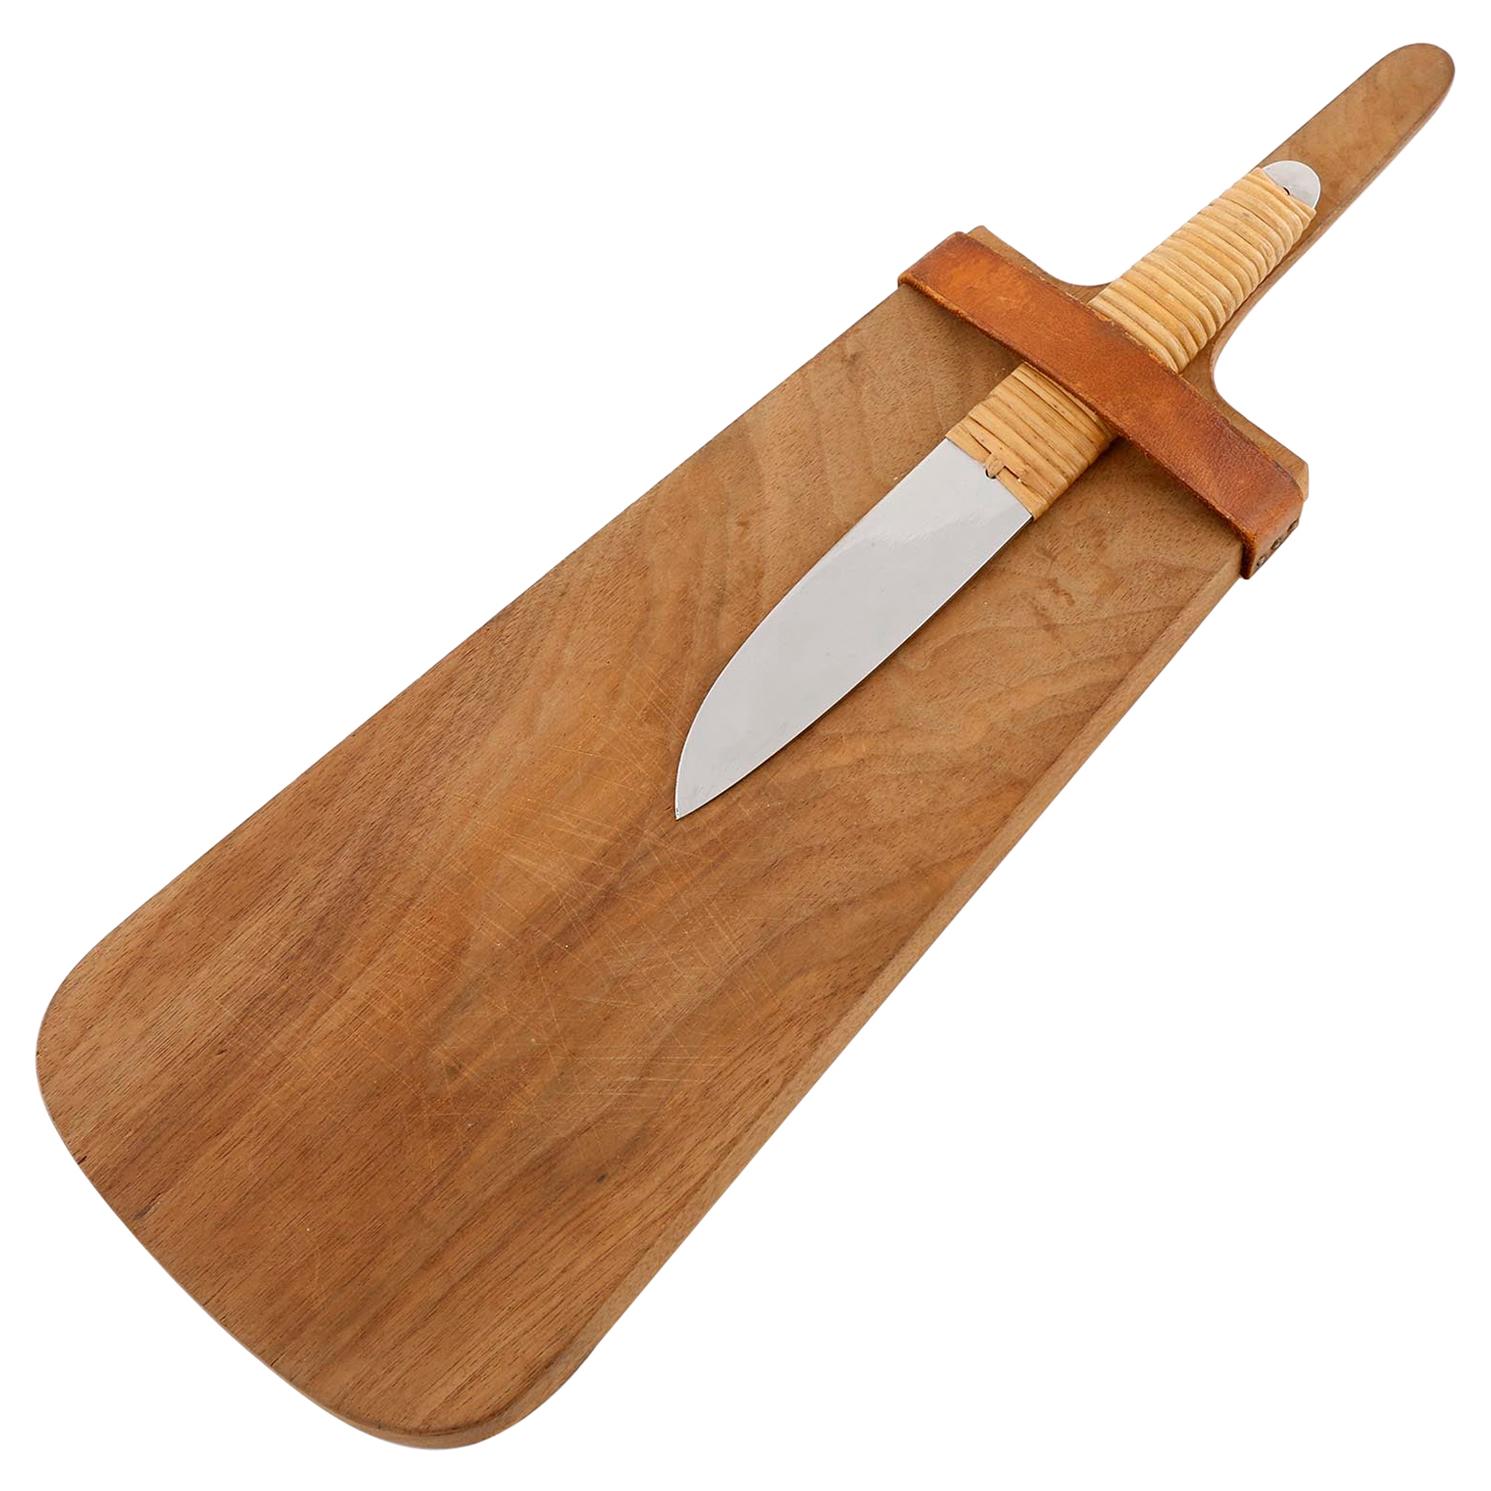 Carl Auböck Knife Cutting Chopping Board, Wood Wicker Stainless Steel, 1950s